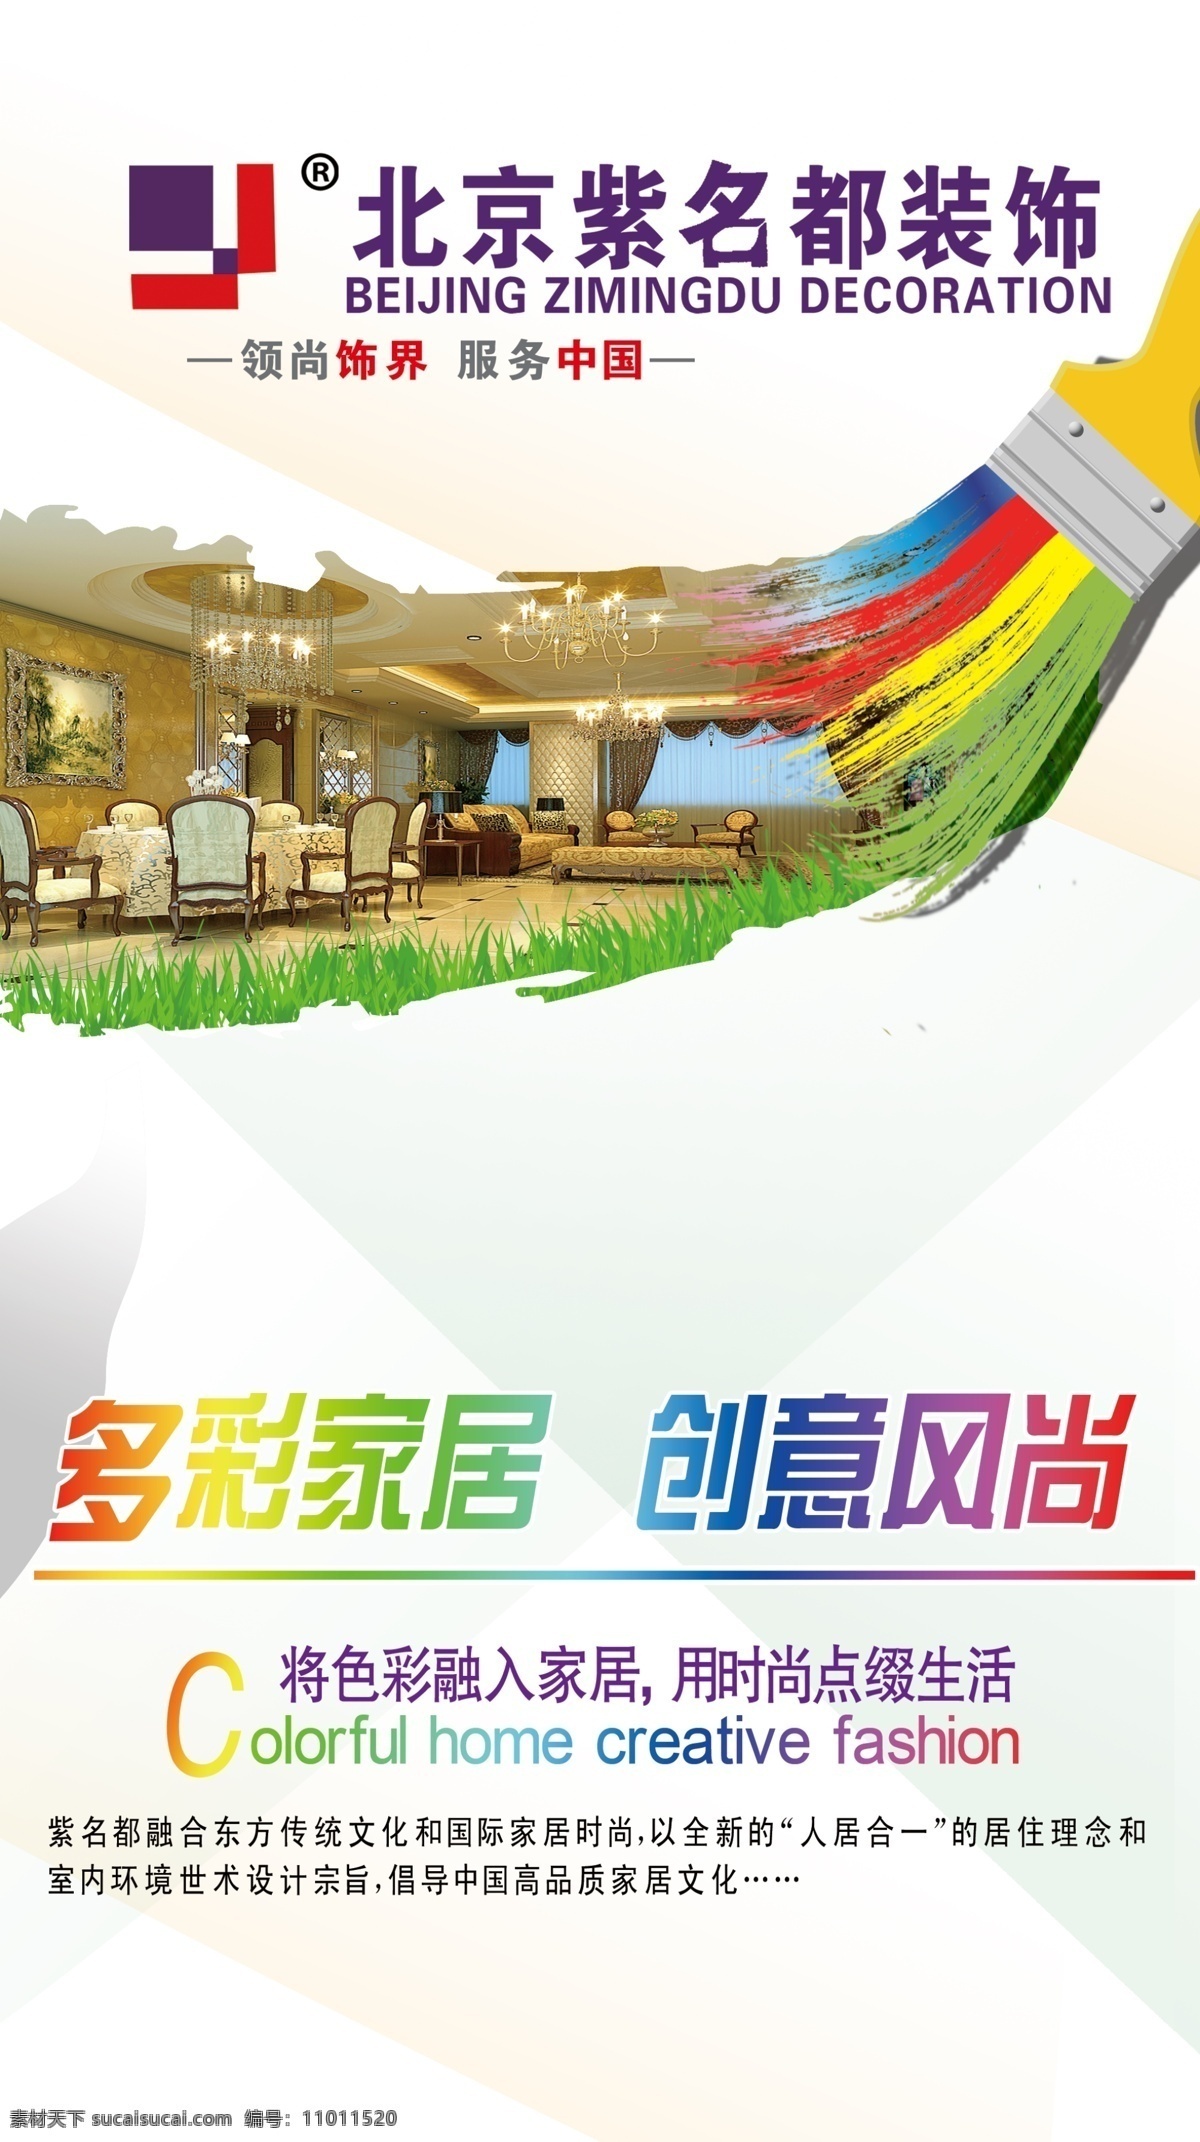 北京 紫 名都 装饰 多彩家居 创意风尚 漆刷 海报 广告设计模板 源文件